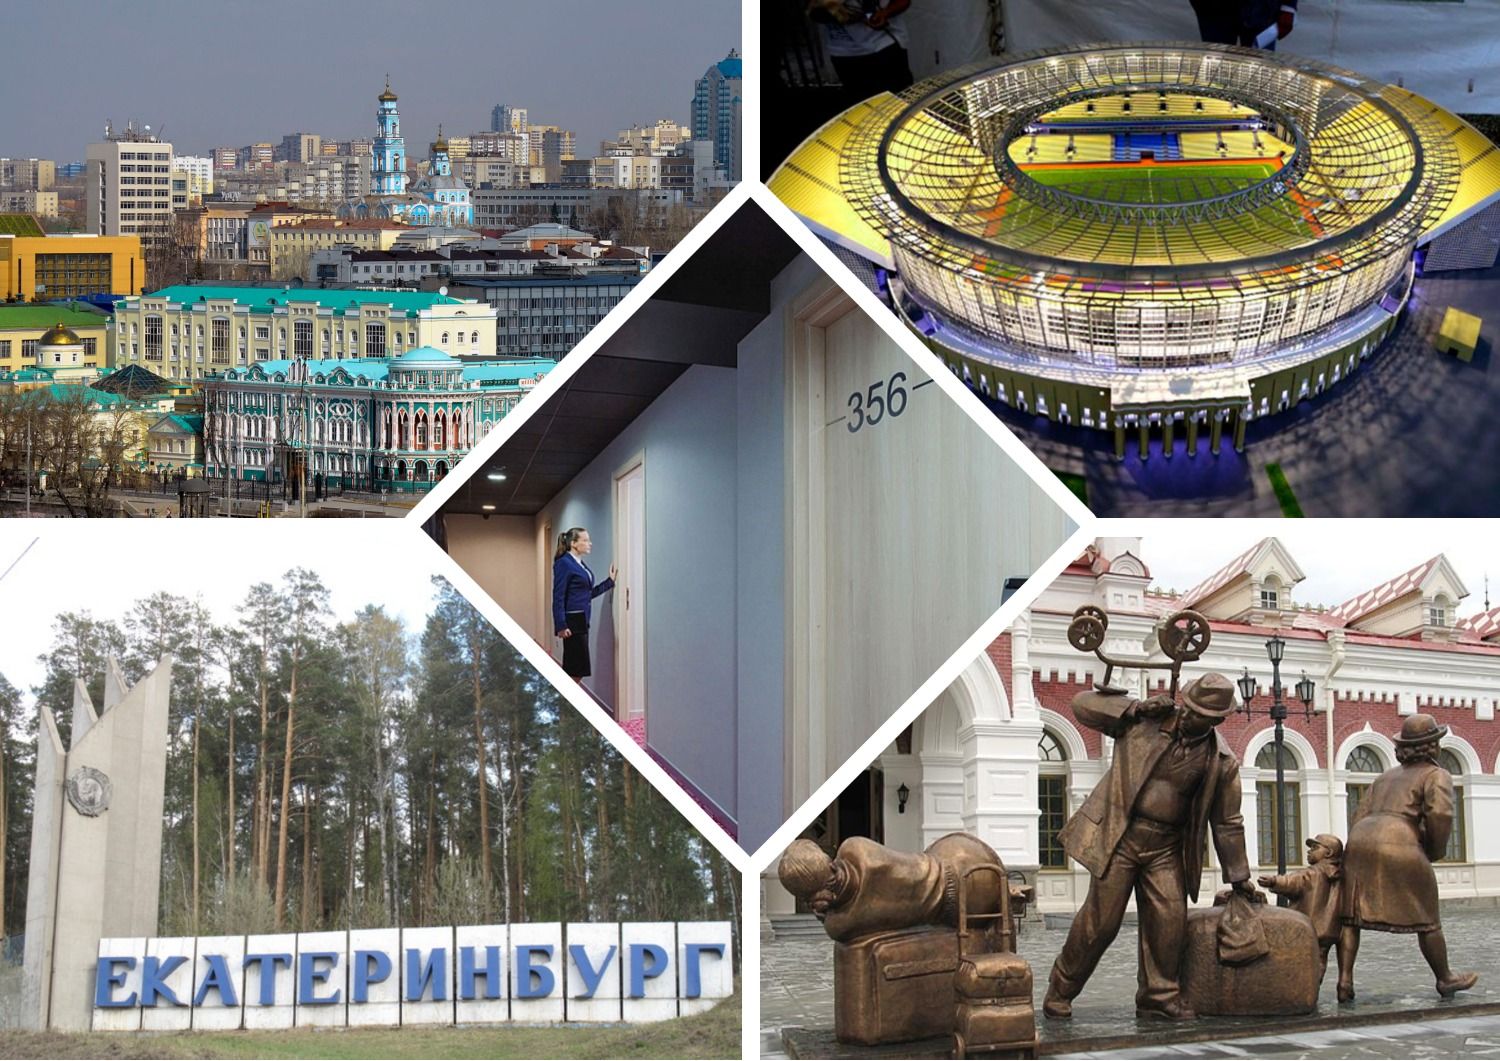 Labākās lētas viesnīcas, viesnīcas, hosteļi Jekaterinburgā 2020. gadā